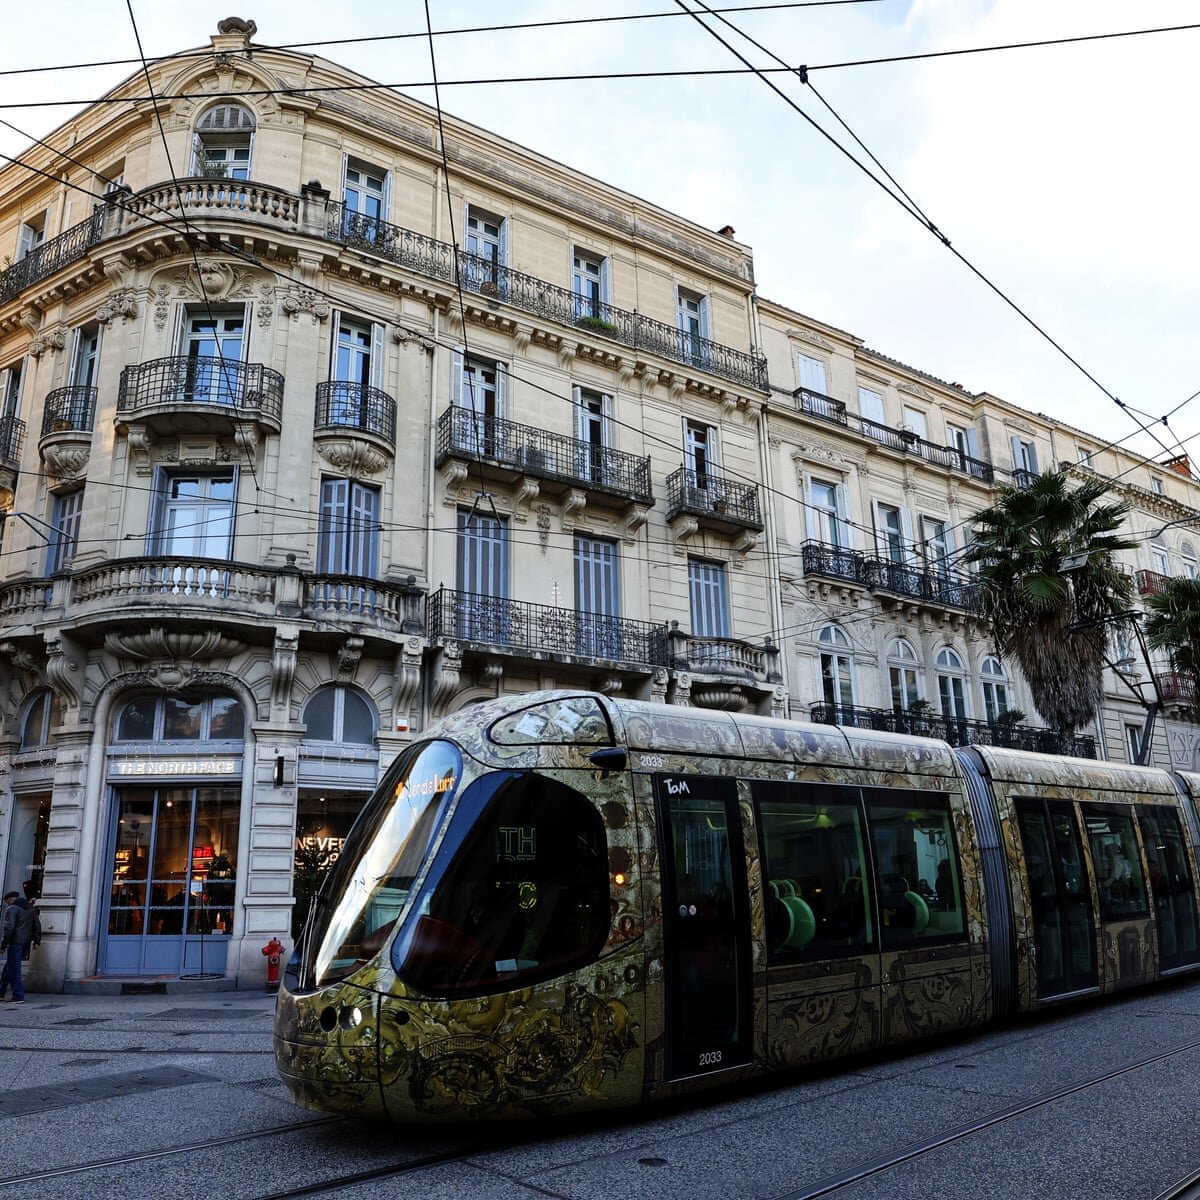 افزایش سفر در شهر فرانسوی با رایگان شدن حمل‌ونقل عمومی